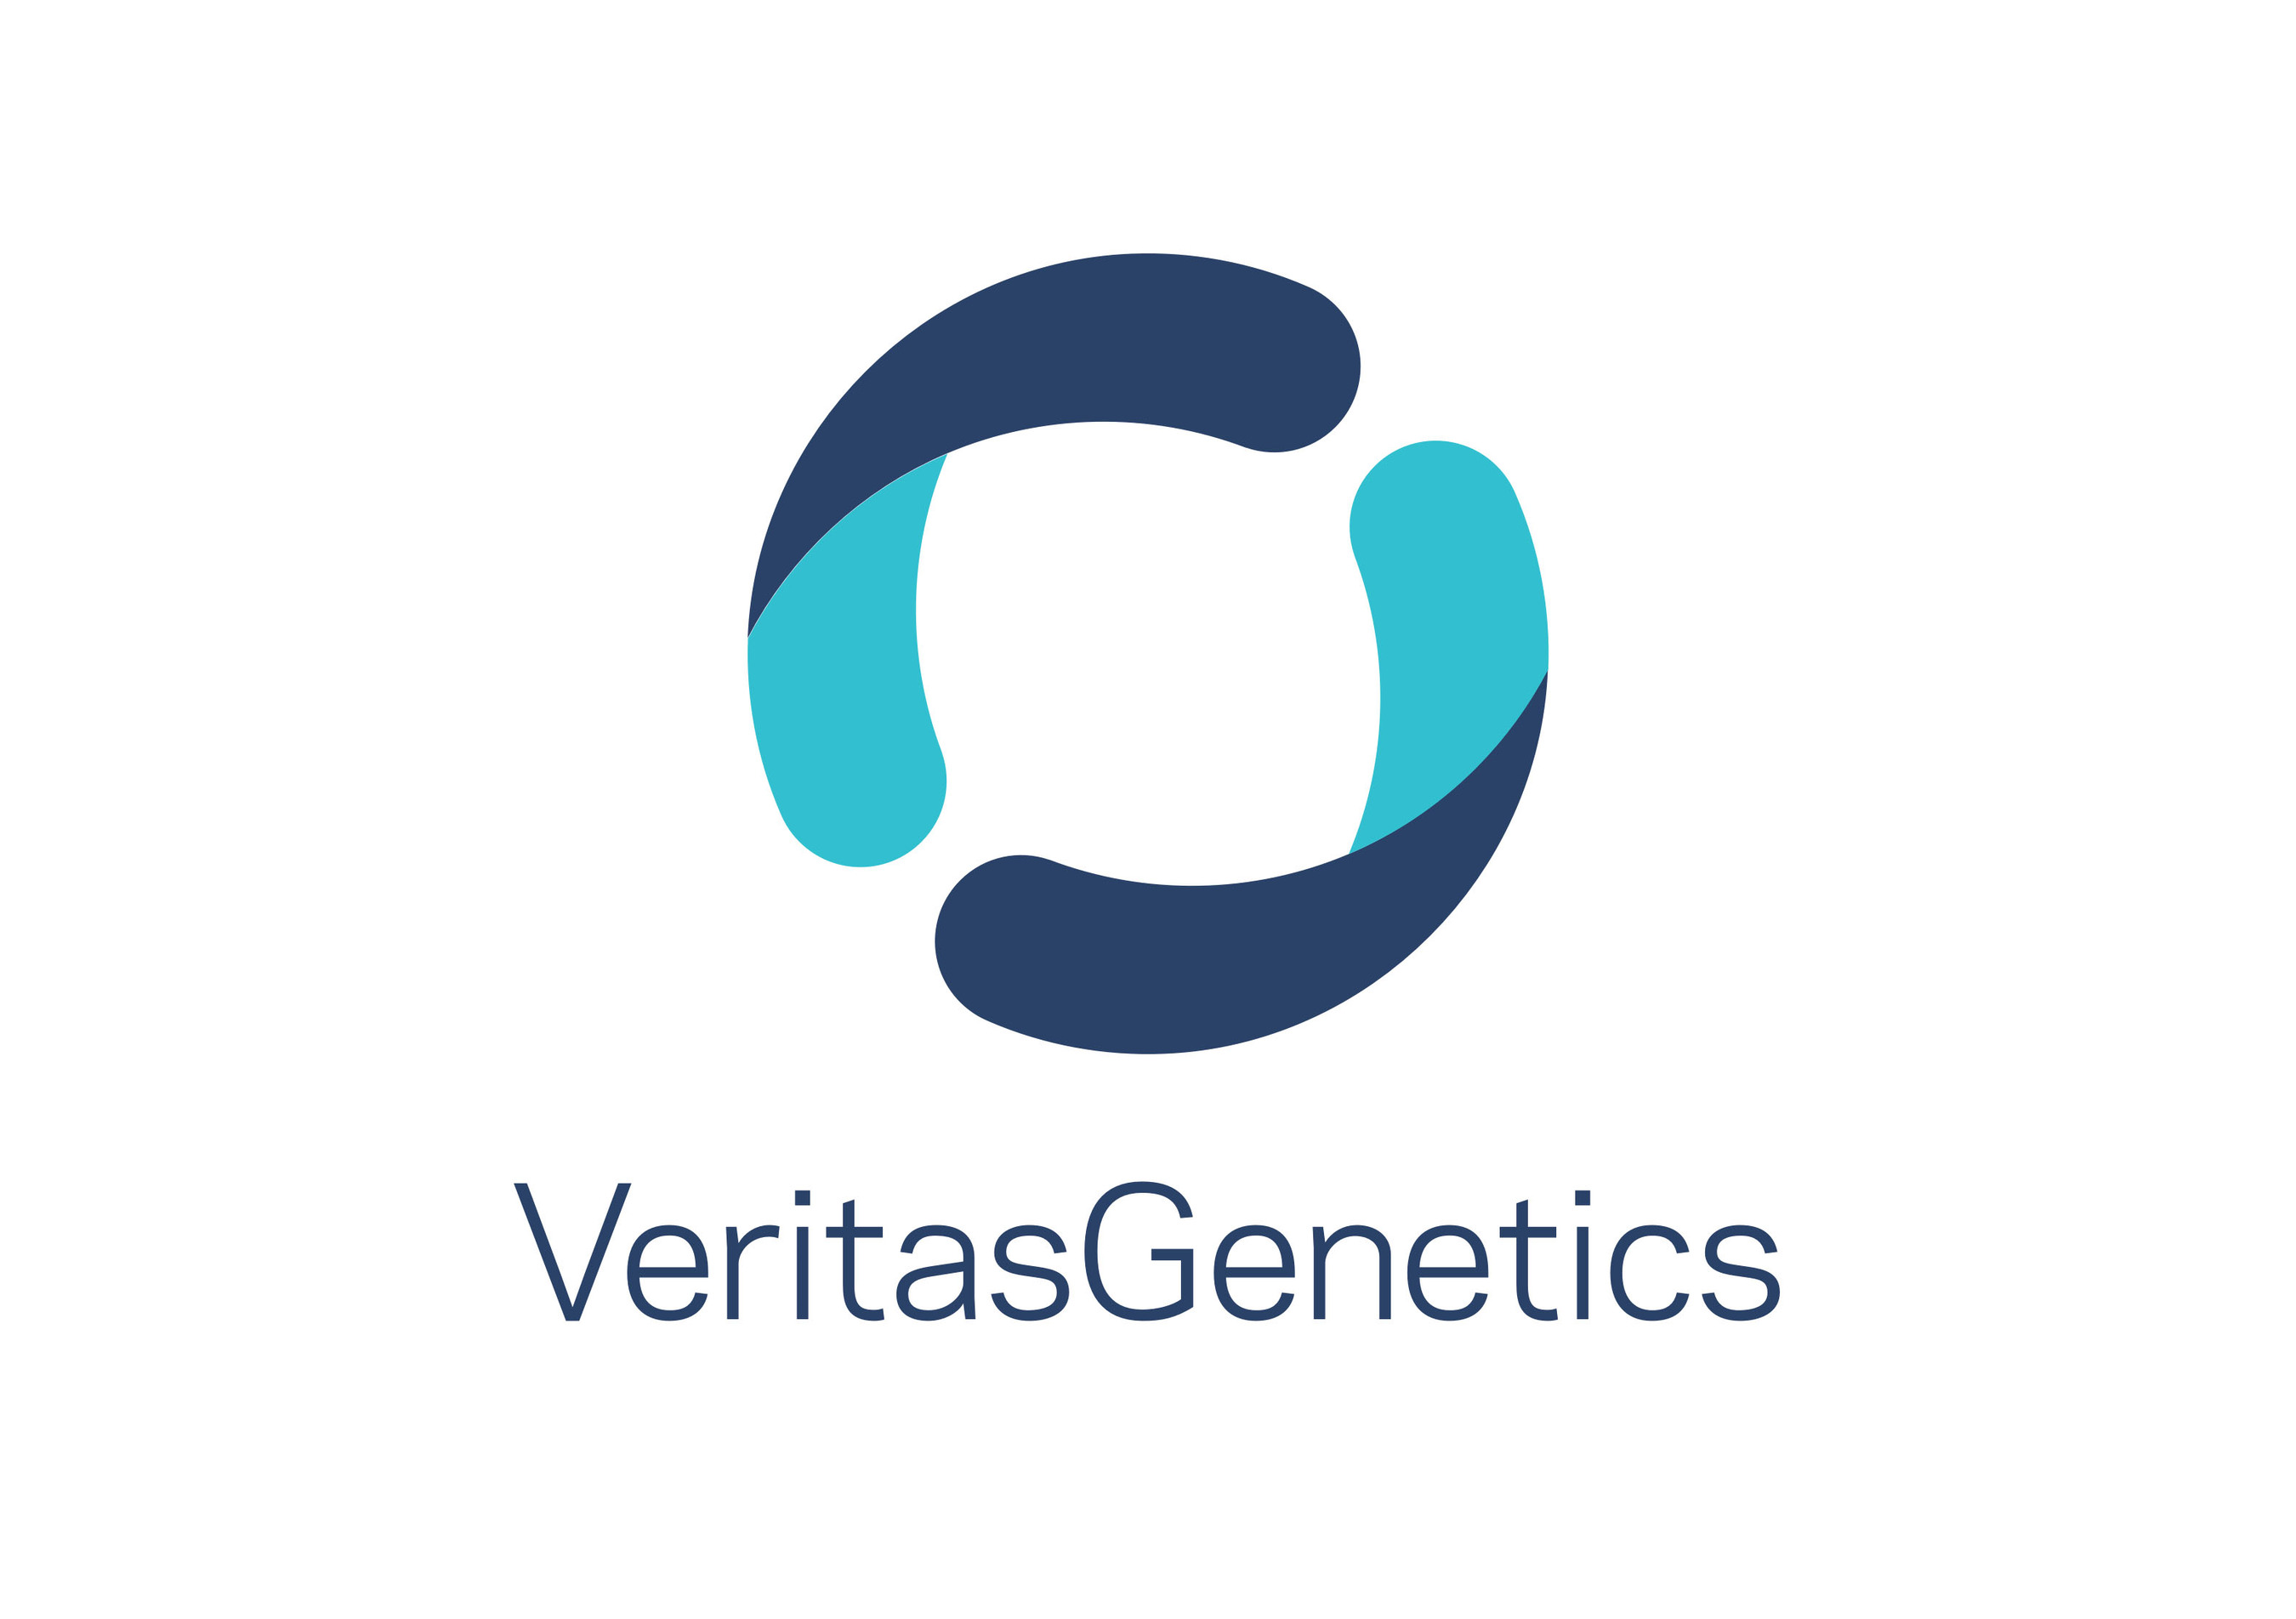 Veritas Genetics (PRNewsFoto/Veritas Genetics)